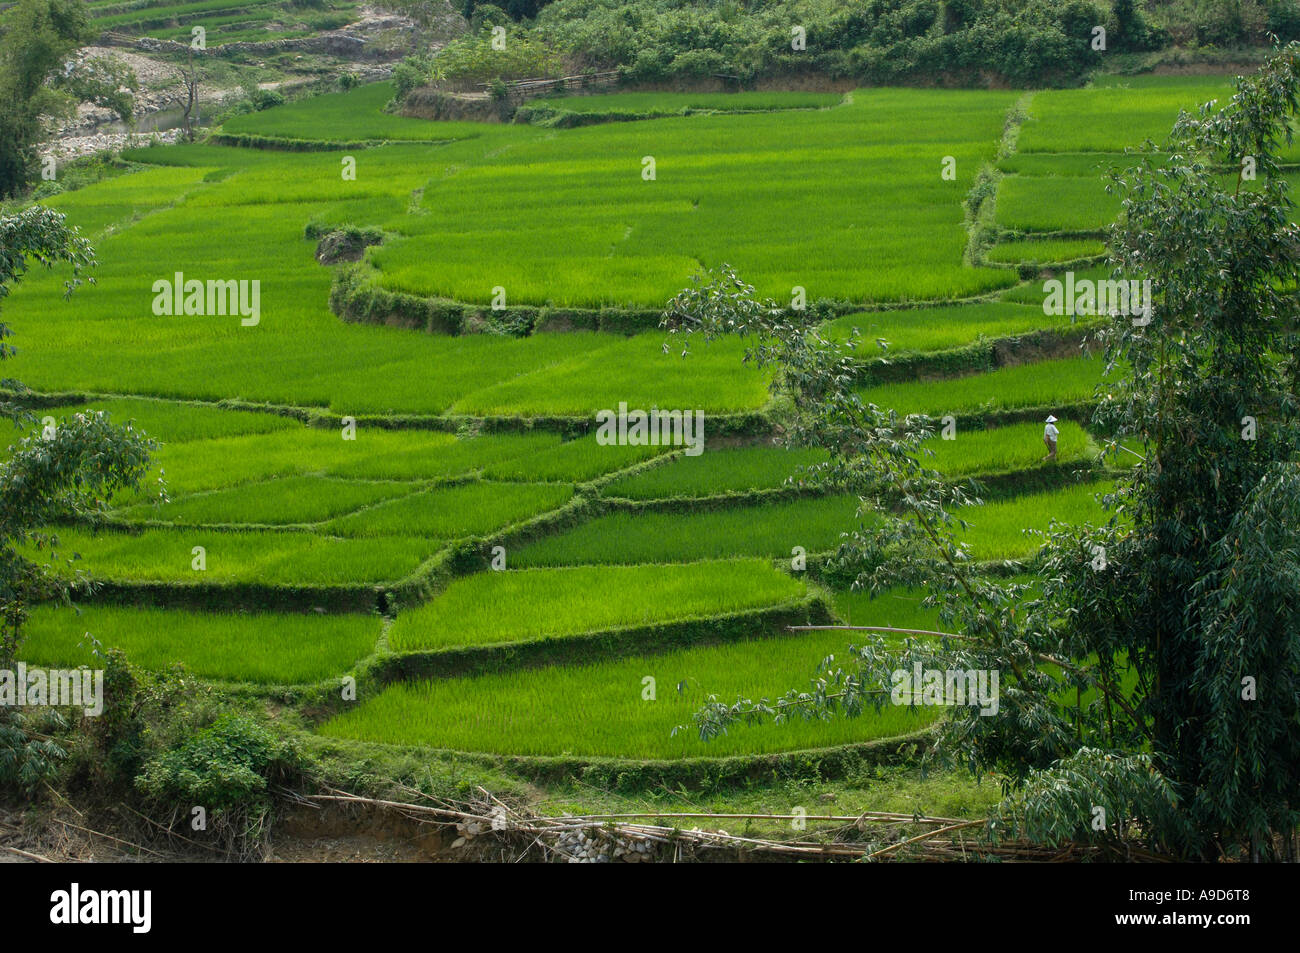 Des rizières en terrasses à Hainan Chine 30 Mar 2006 Banque D'Images